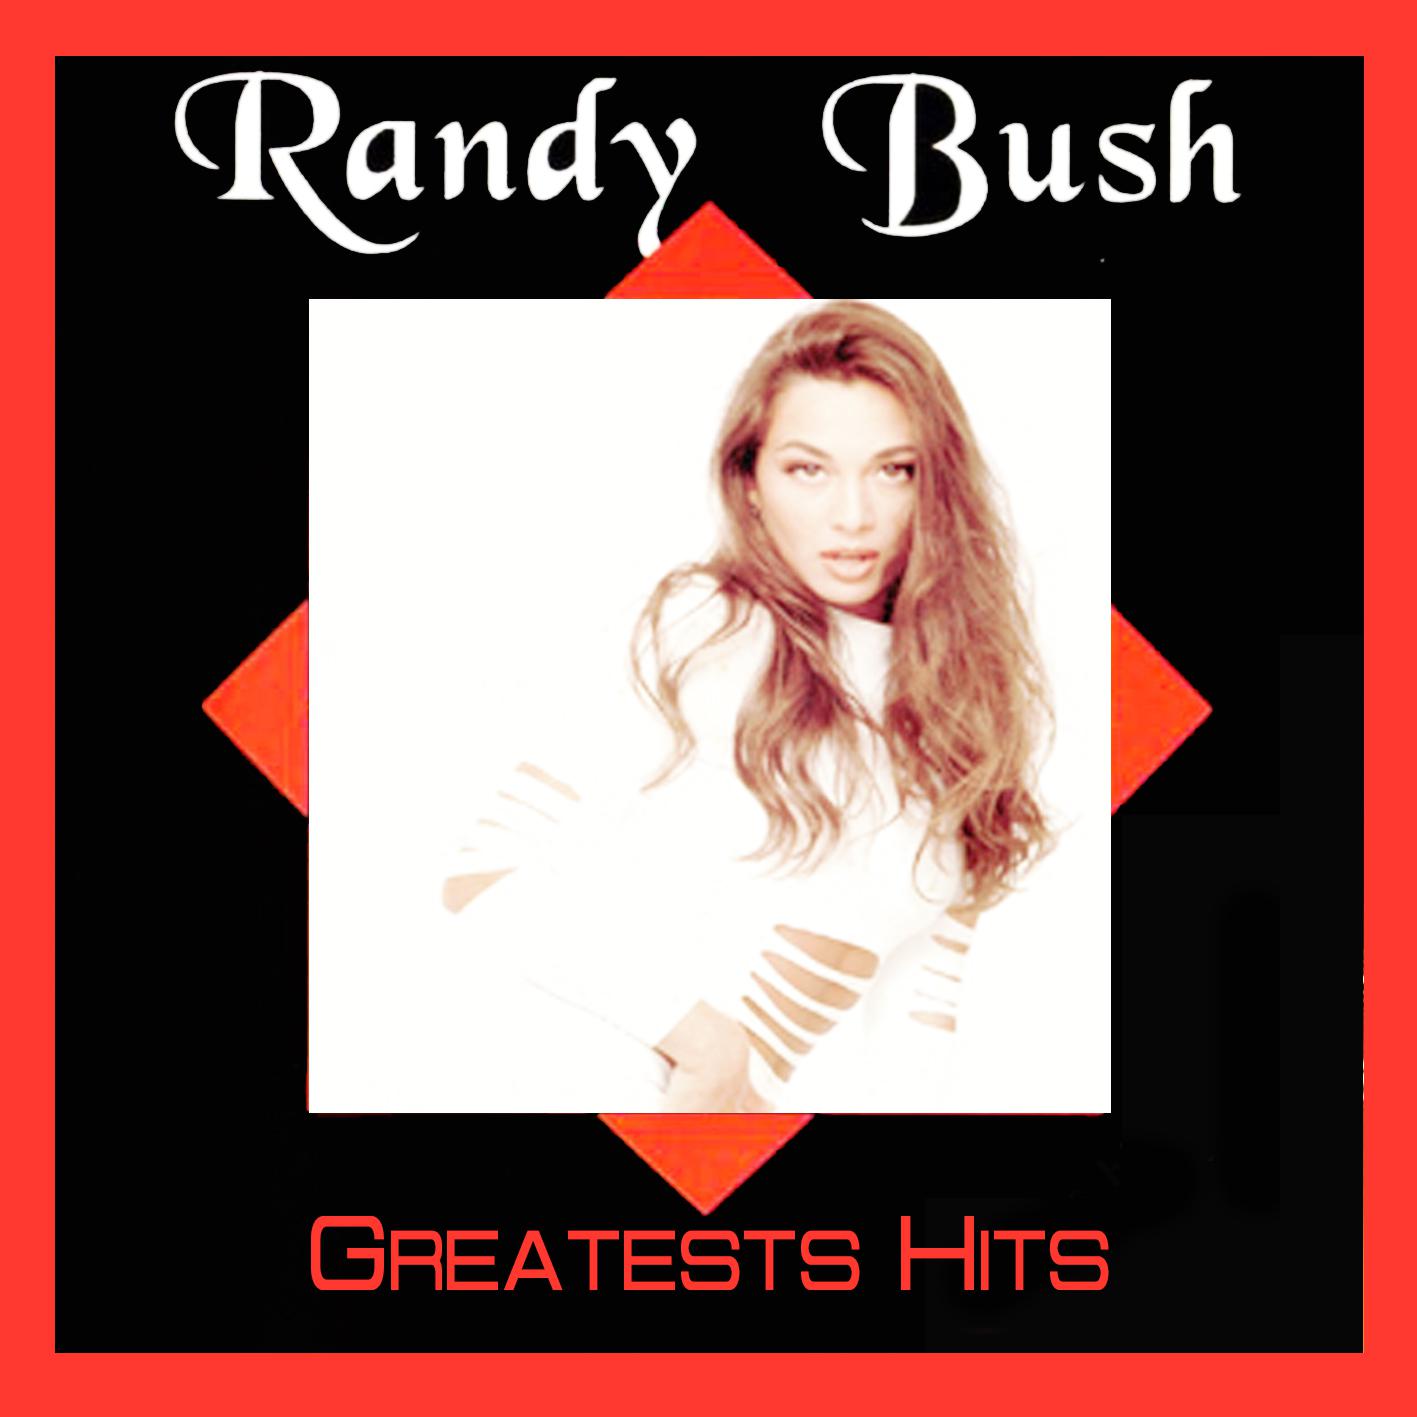 Randy Bush - Take One Step